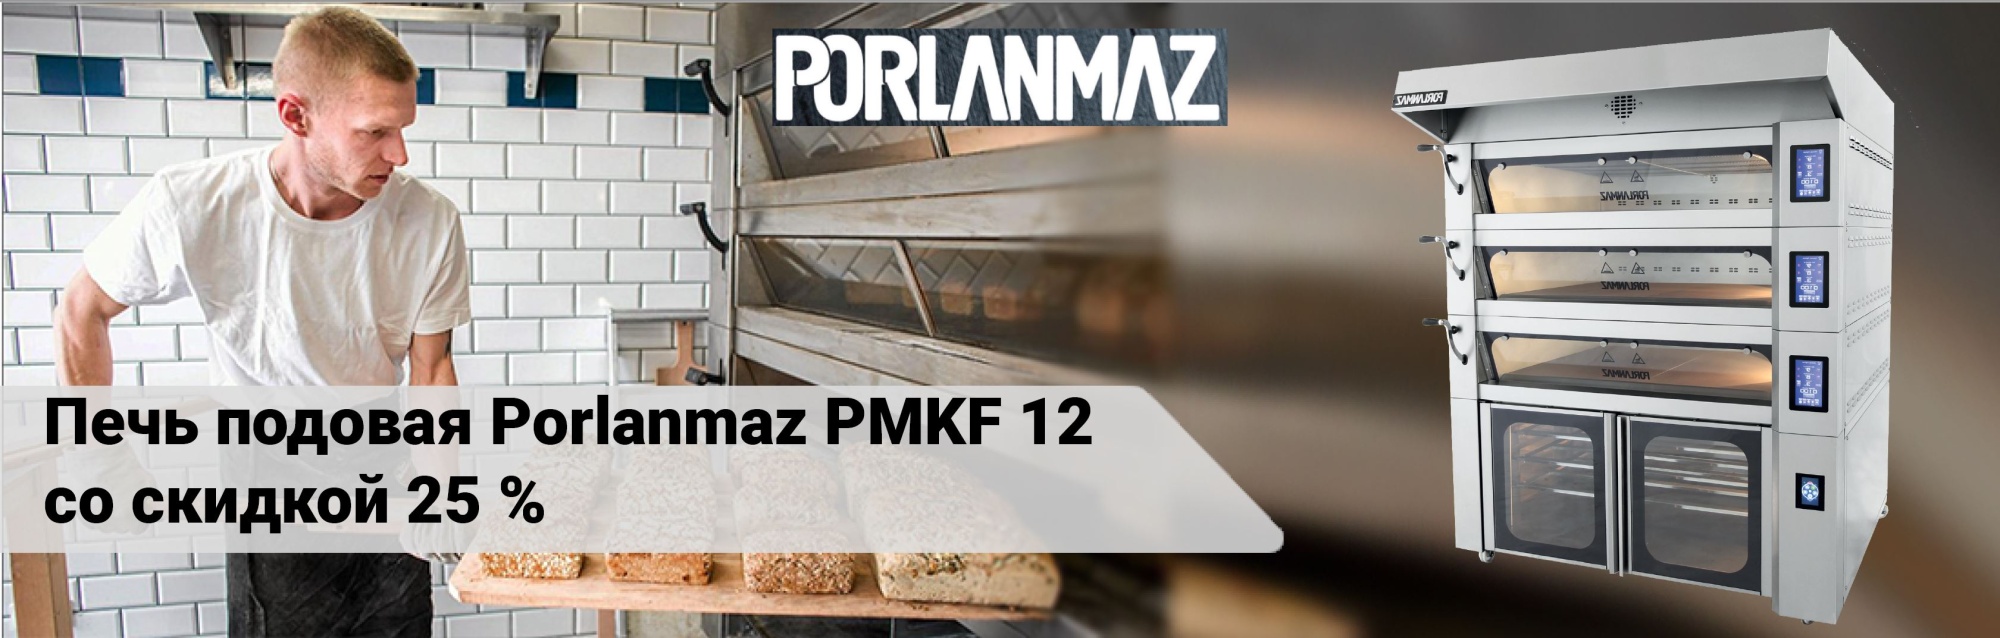 Подовая печь Porlanmaz со скидкой 25%